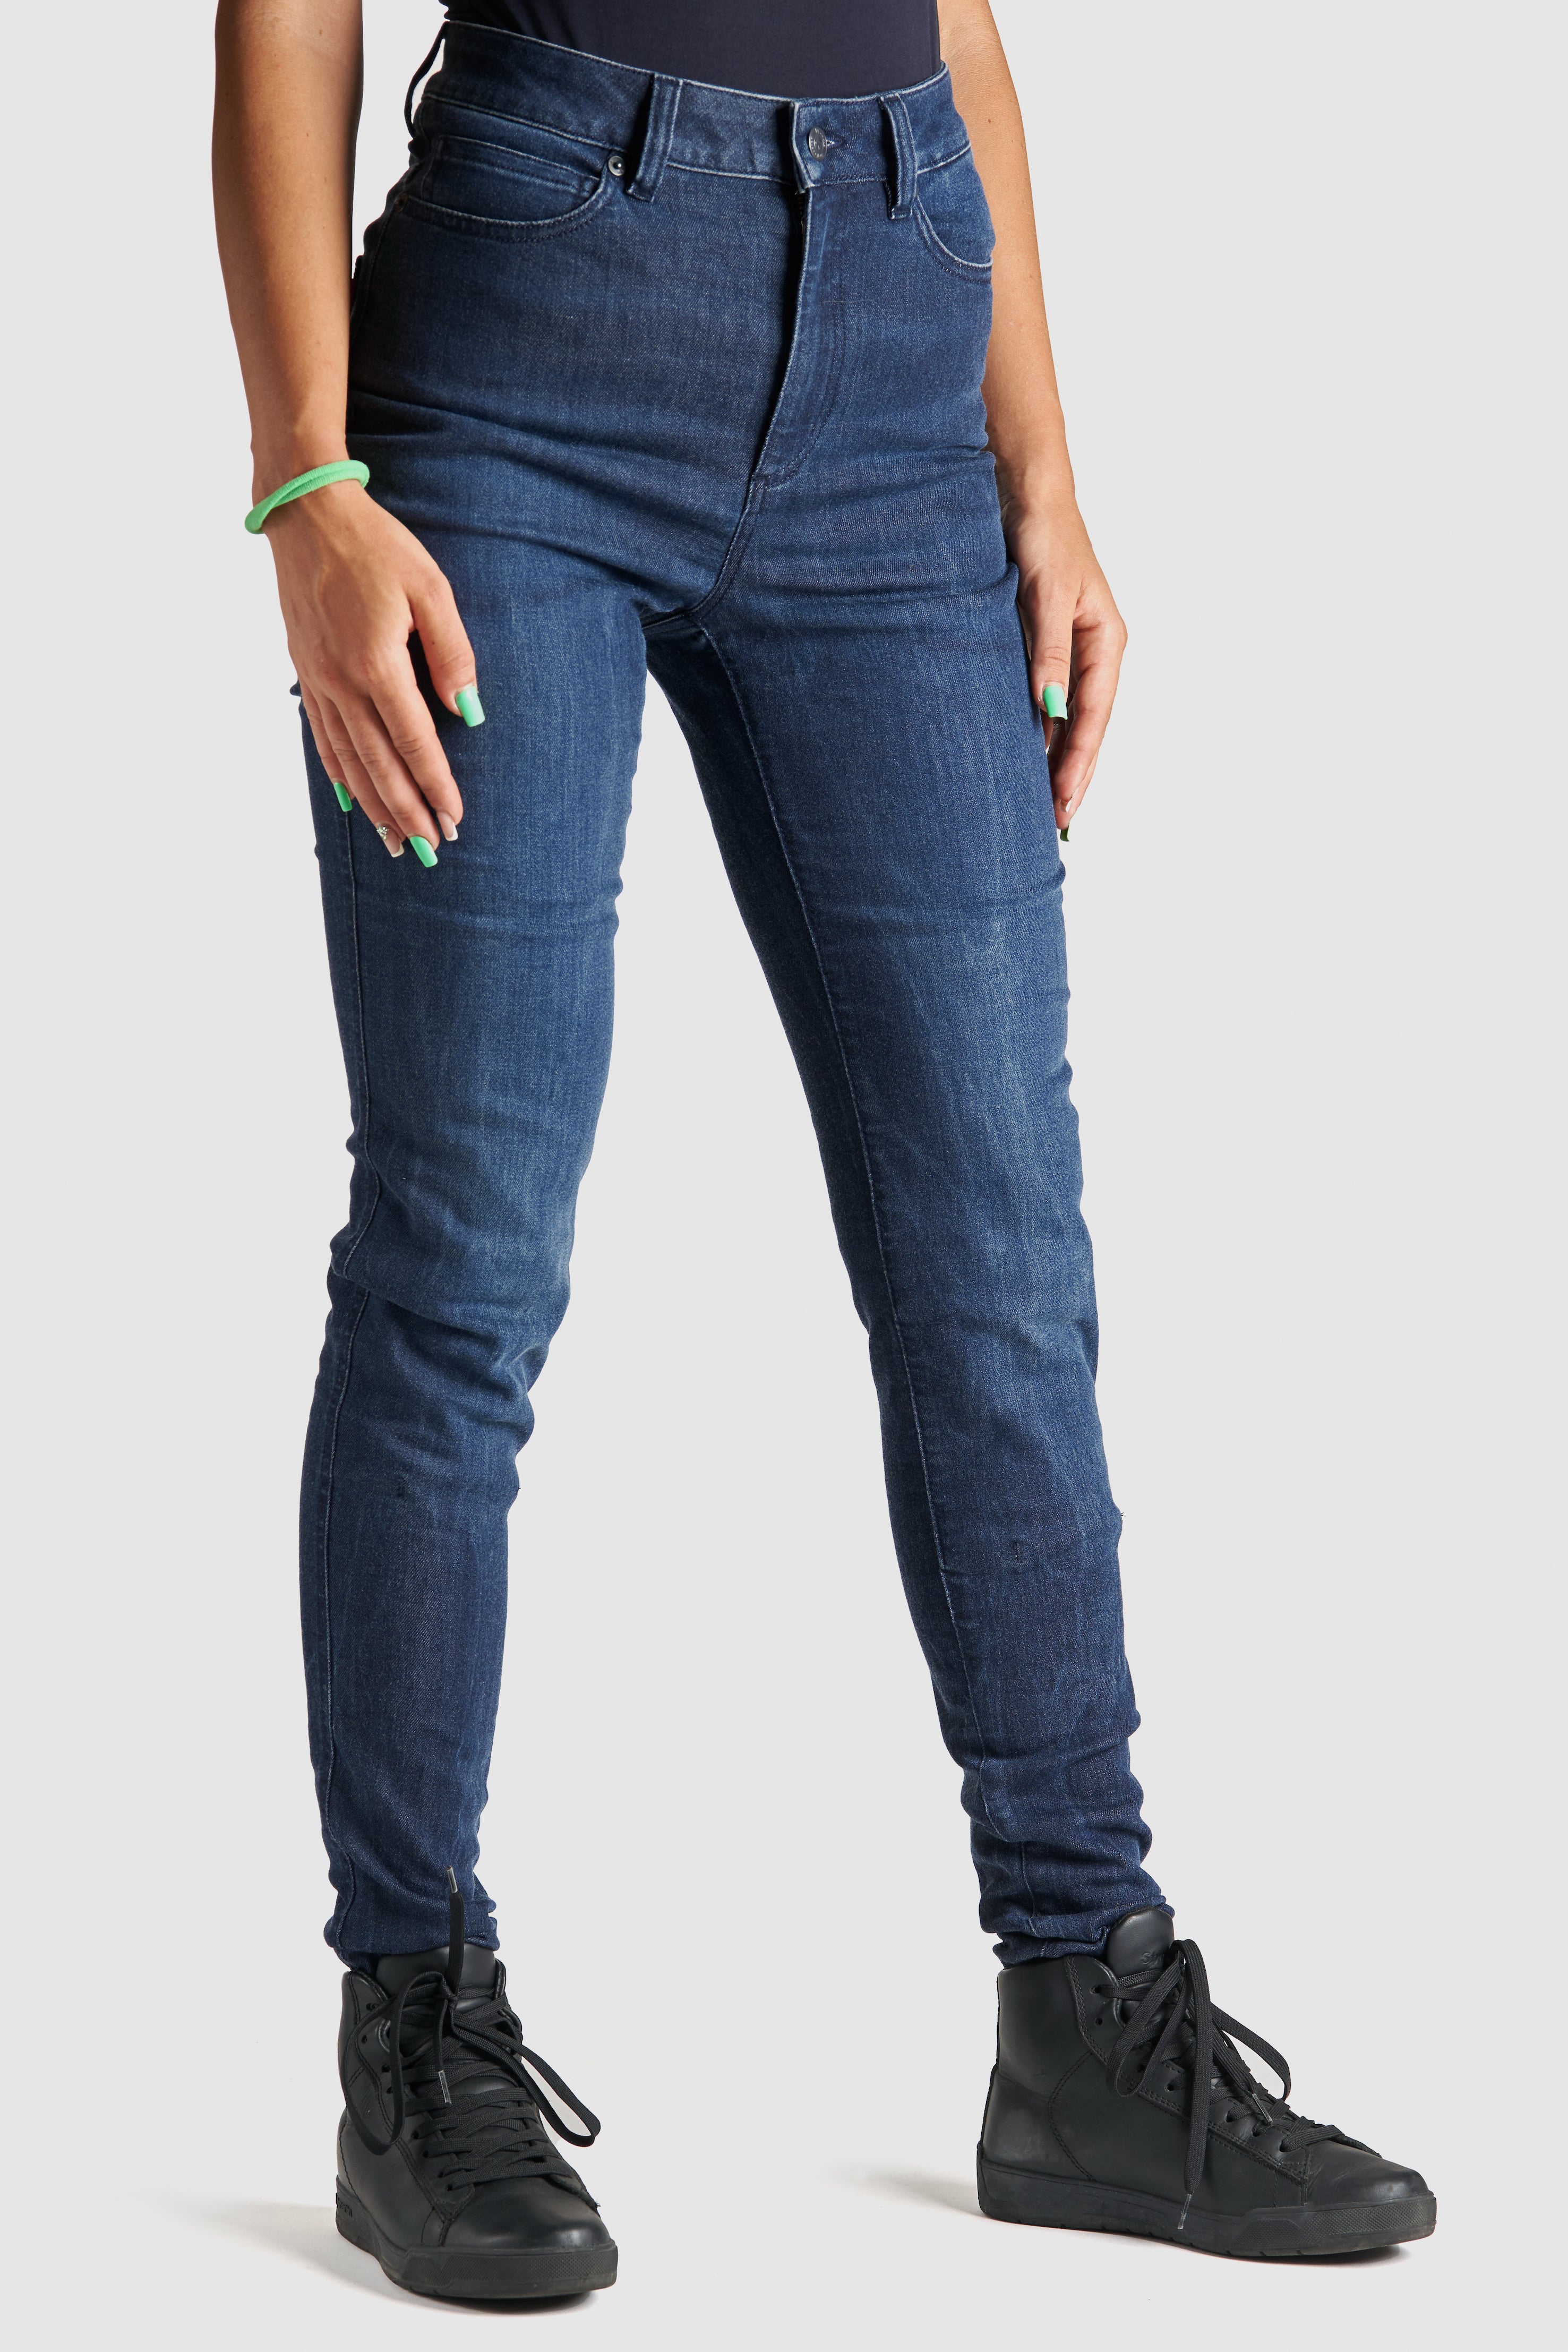 Woman&#39;s legs wearing blue motorcycle jeans 